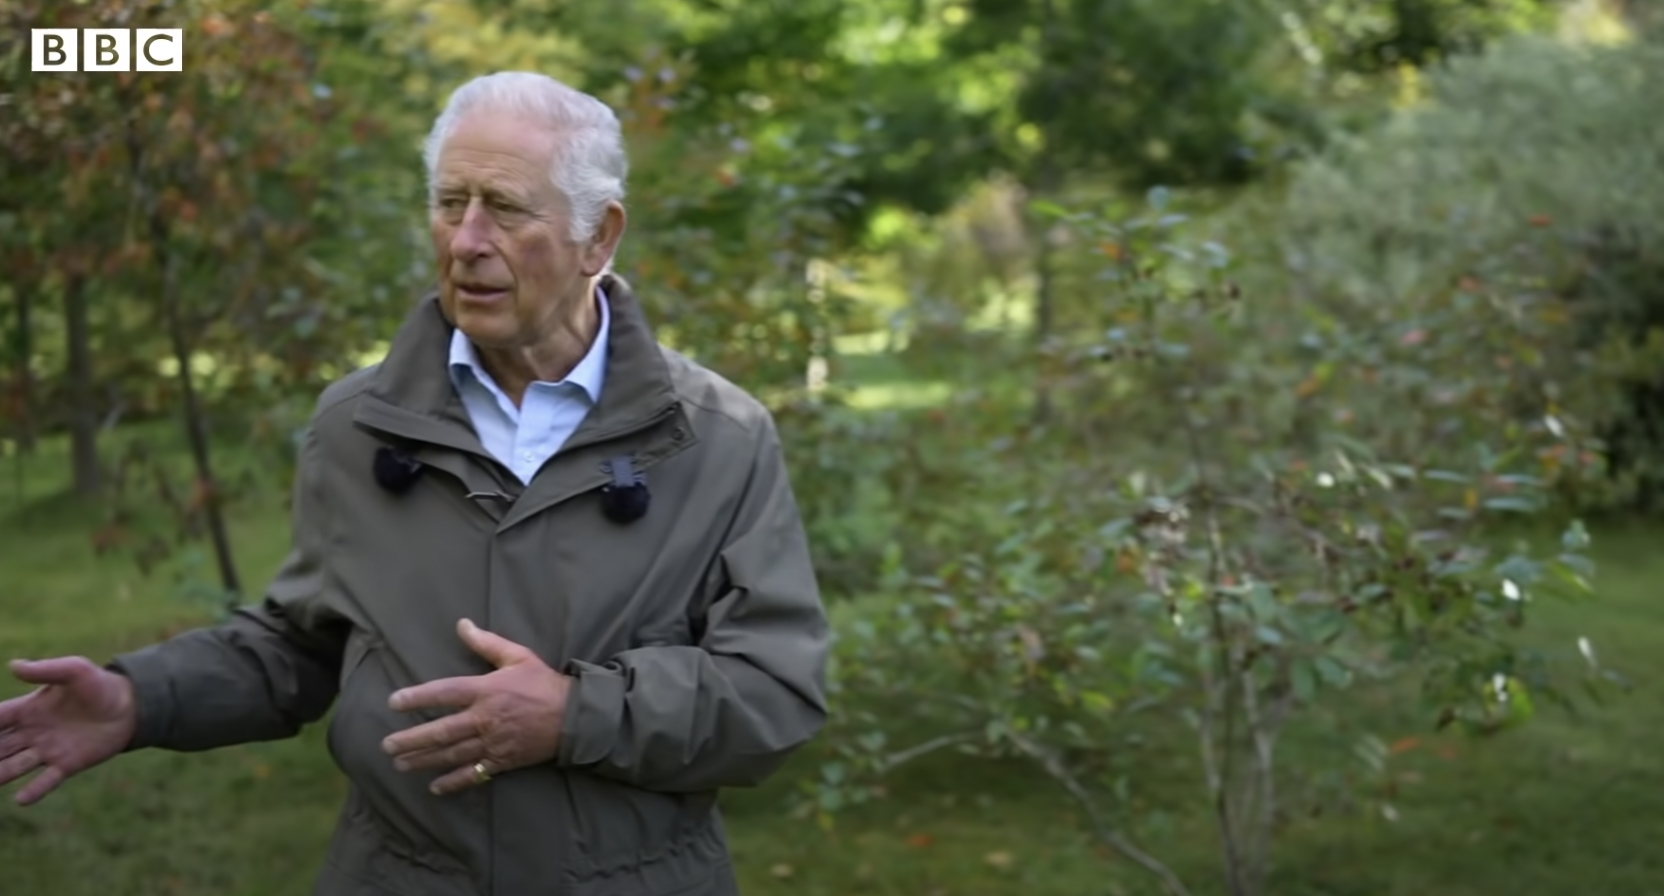 Le roi Charles III lors d'une interview dans le jardin du domaine de Balmoral, daté de 2022 | Source : YouTube/BBC News